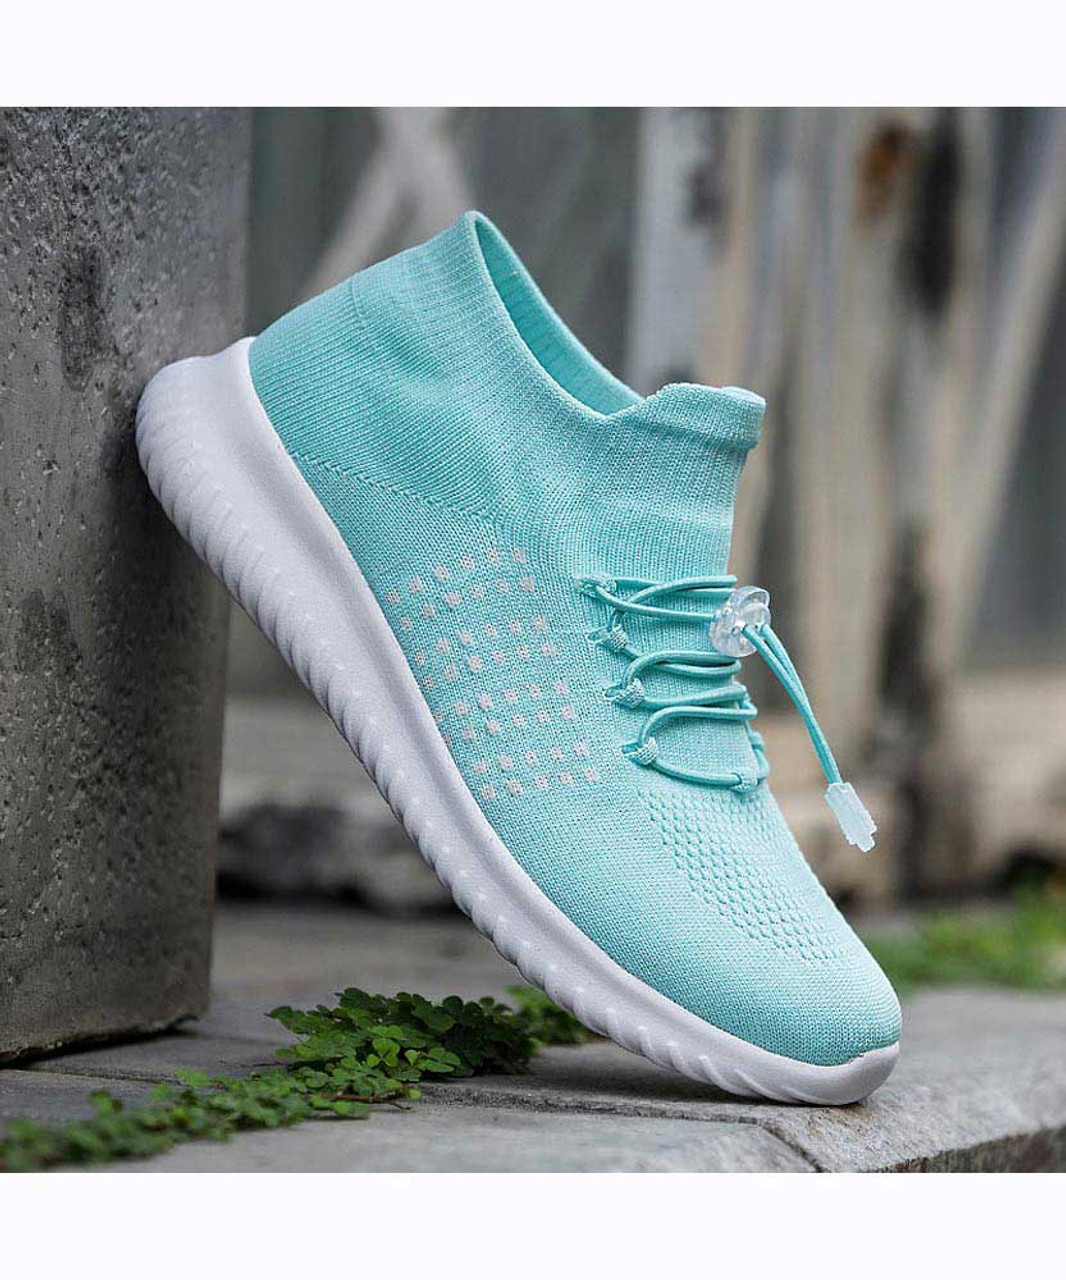 Green blue flyknit dot pattern sock like fit shoe sneaker | Womens shoe ...